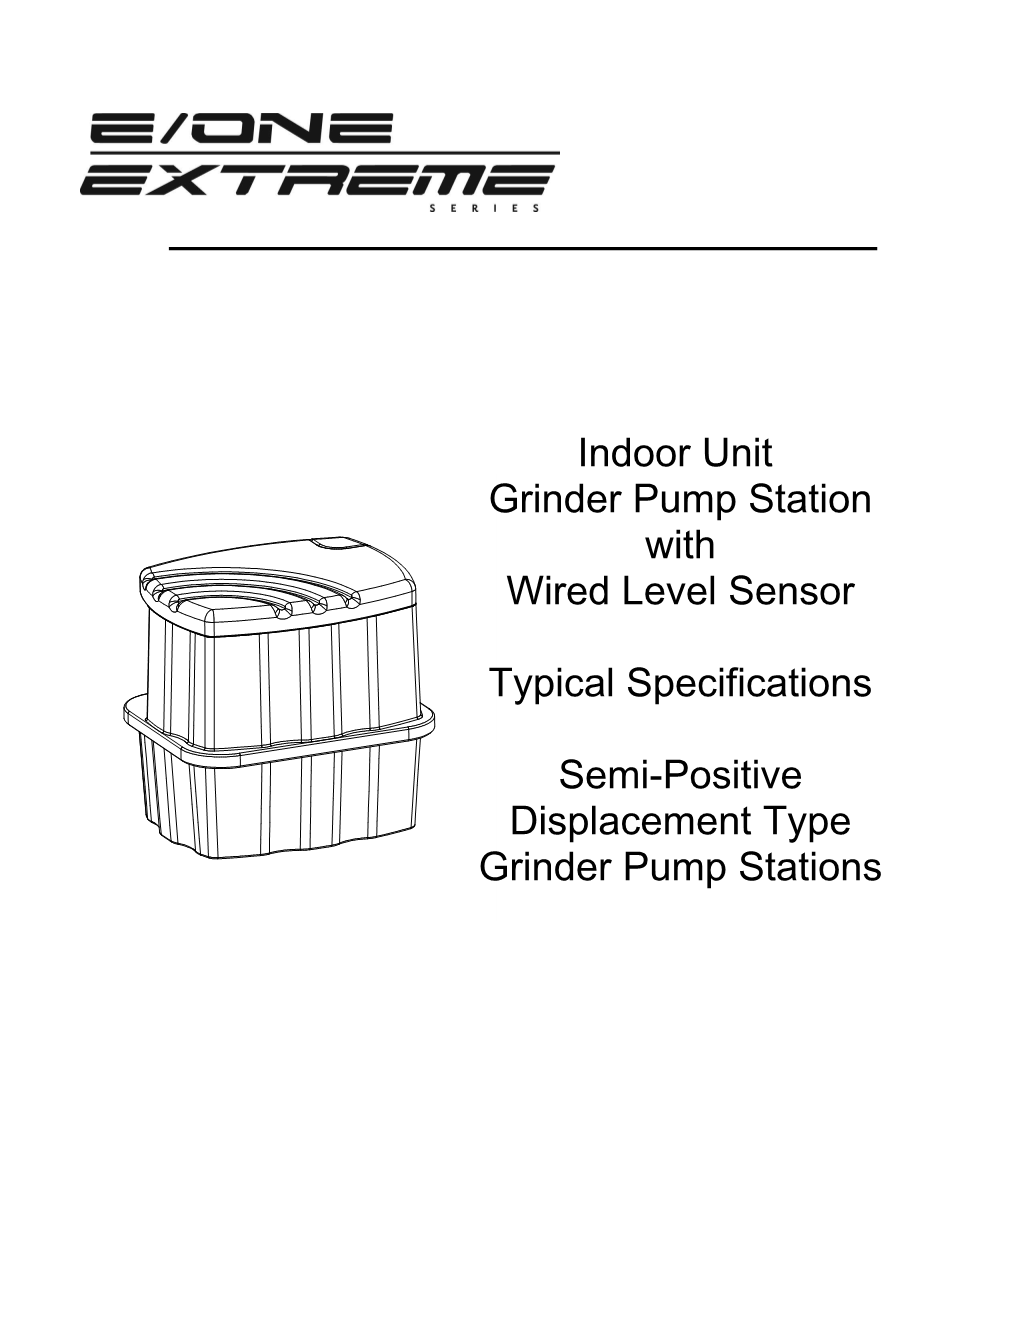 Section: Indoor Grinder Pump Stations